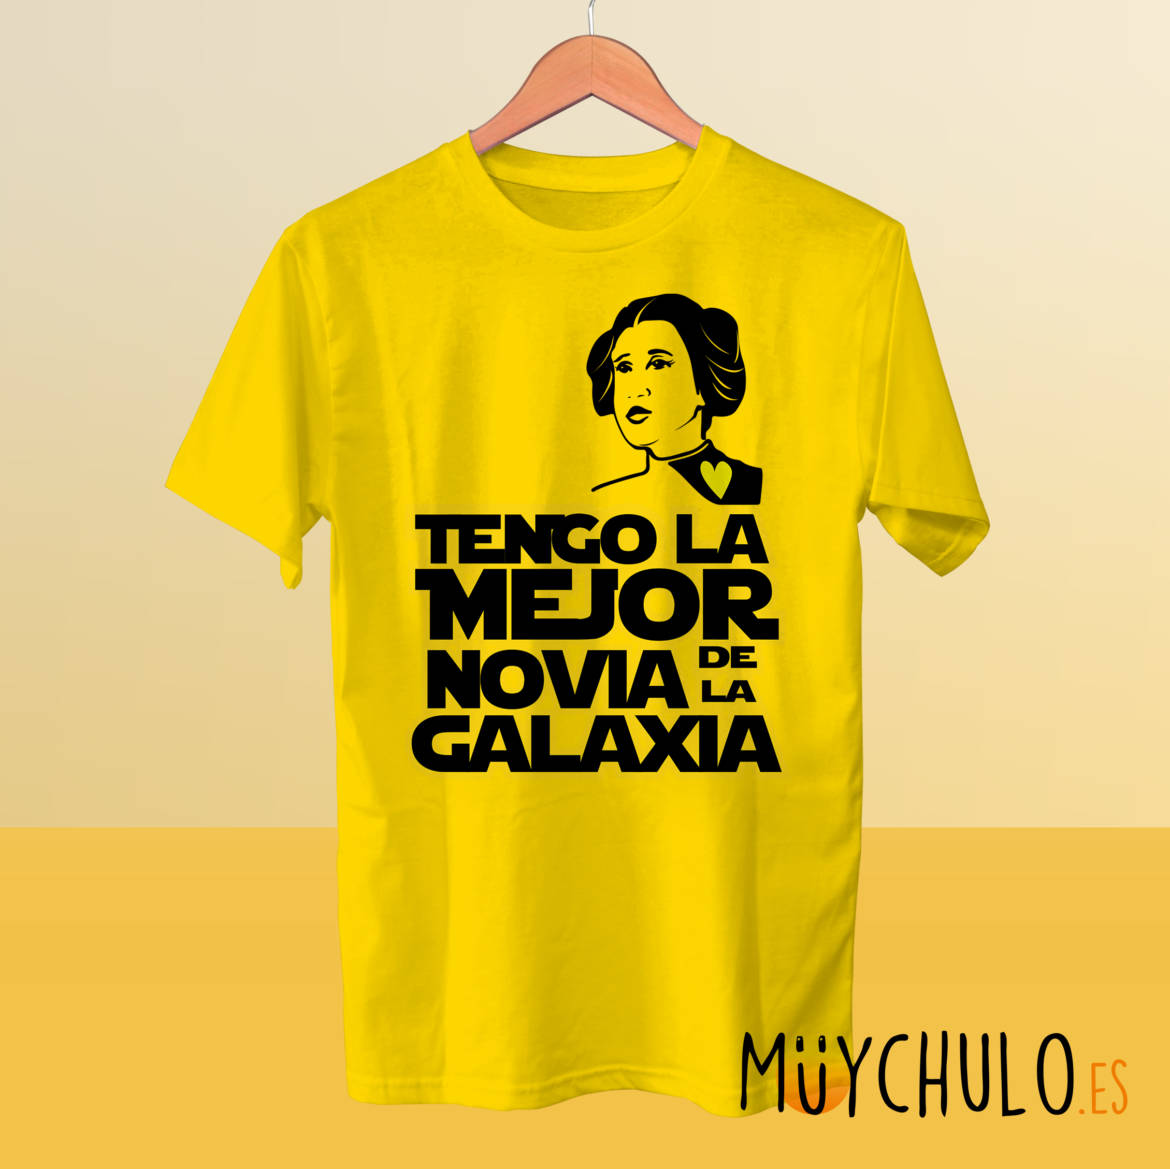 Tengo-la-mejor-novia-de-la-galaxia_camiseta_amarilla.jpg